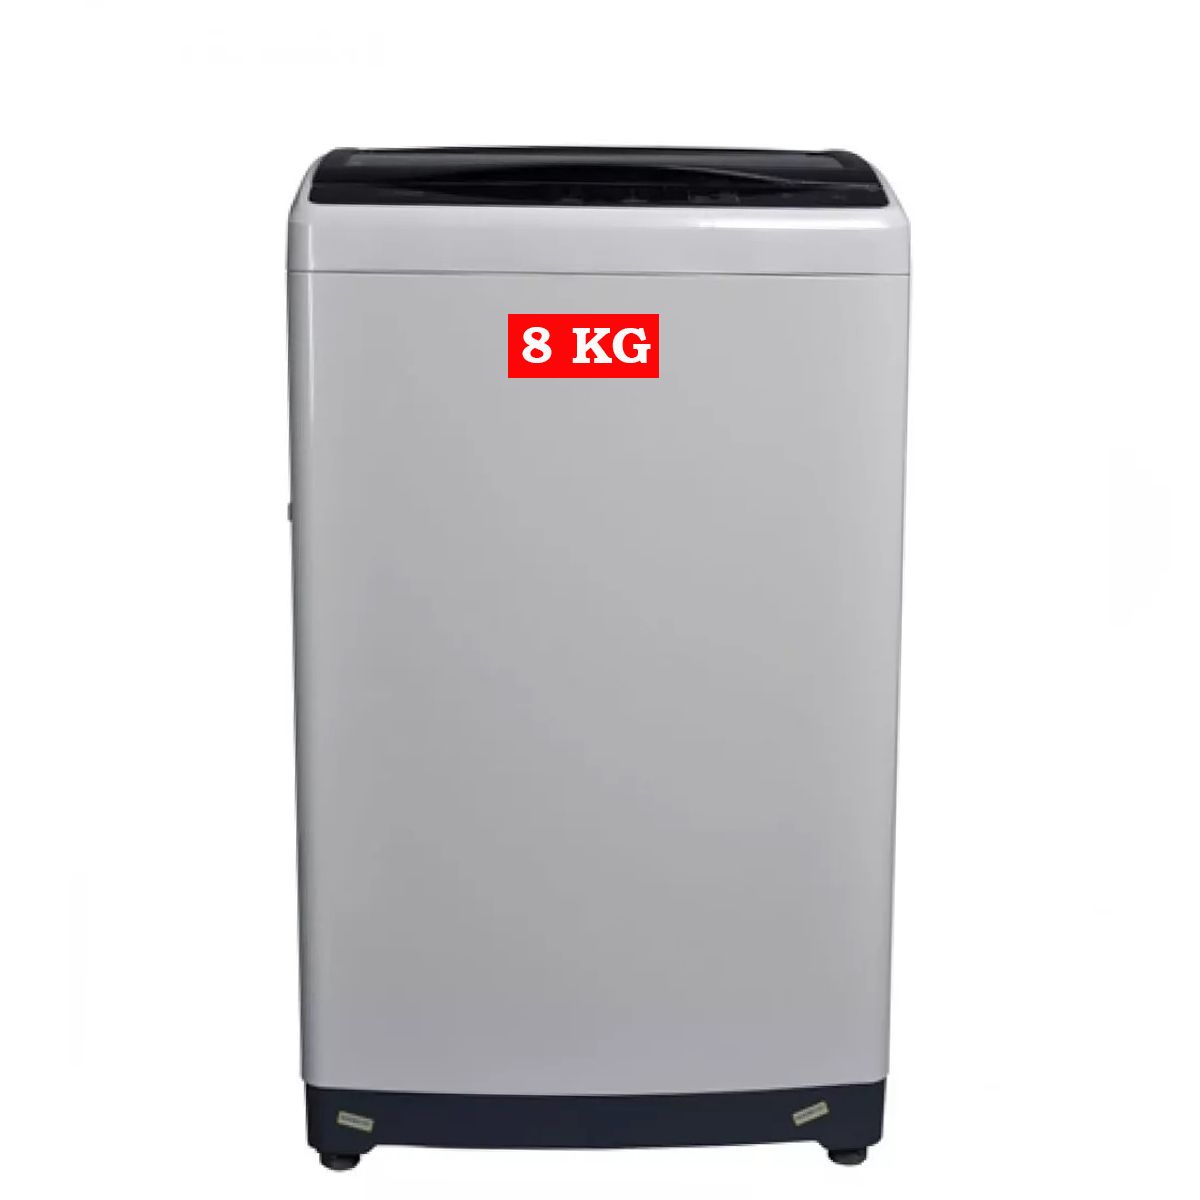 Haier Top Load Fully Automatic Washing Machine 8 KG (HWM-80-1708Y)